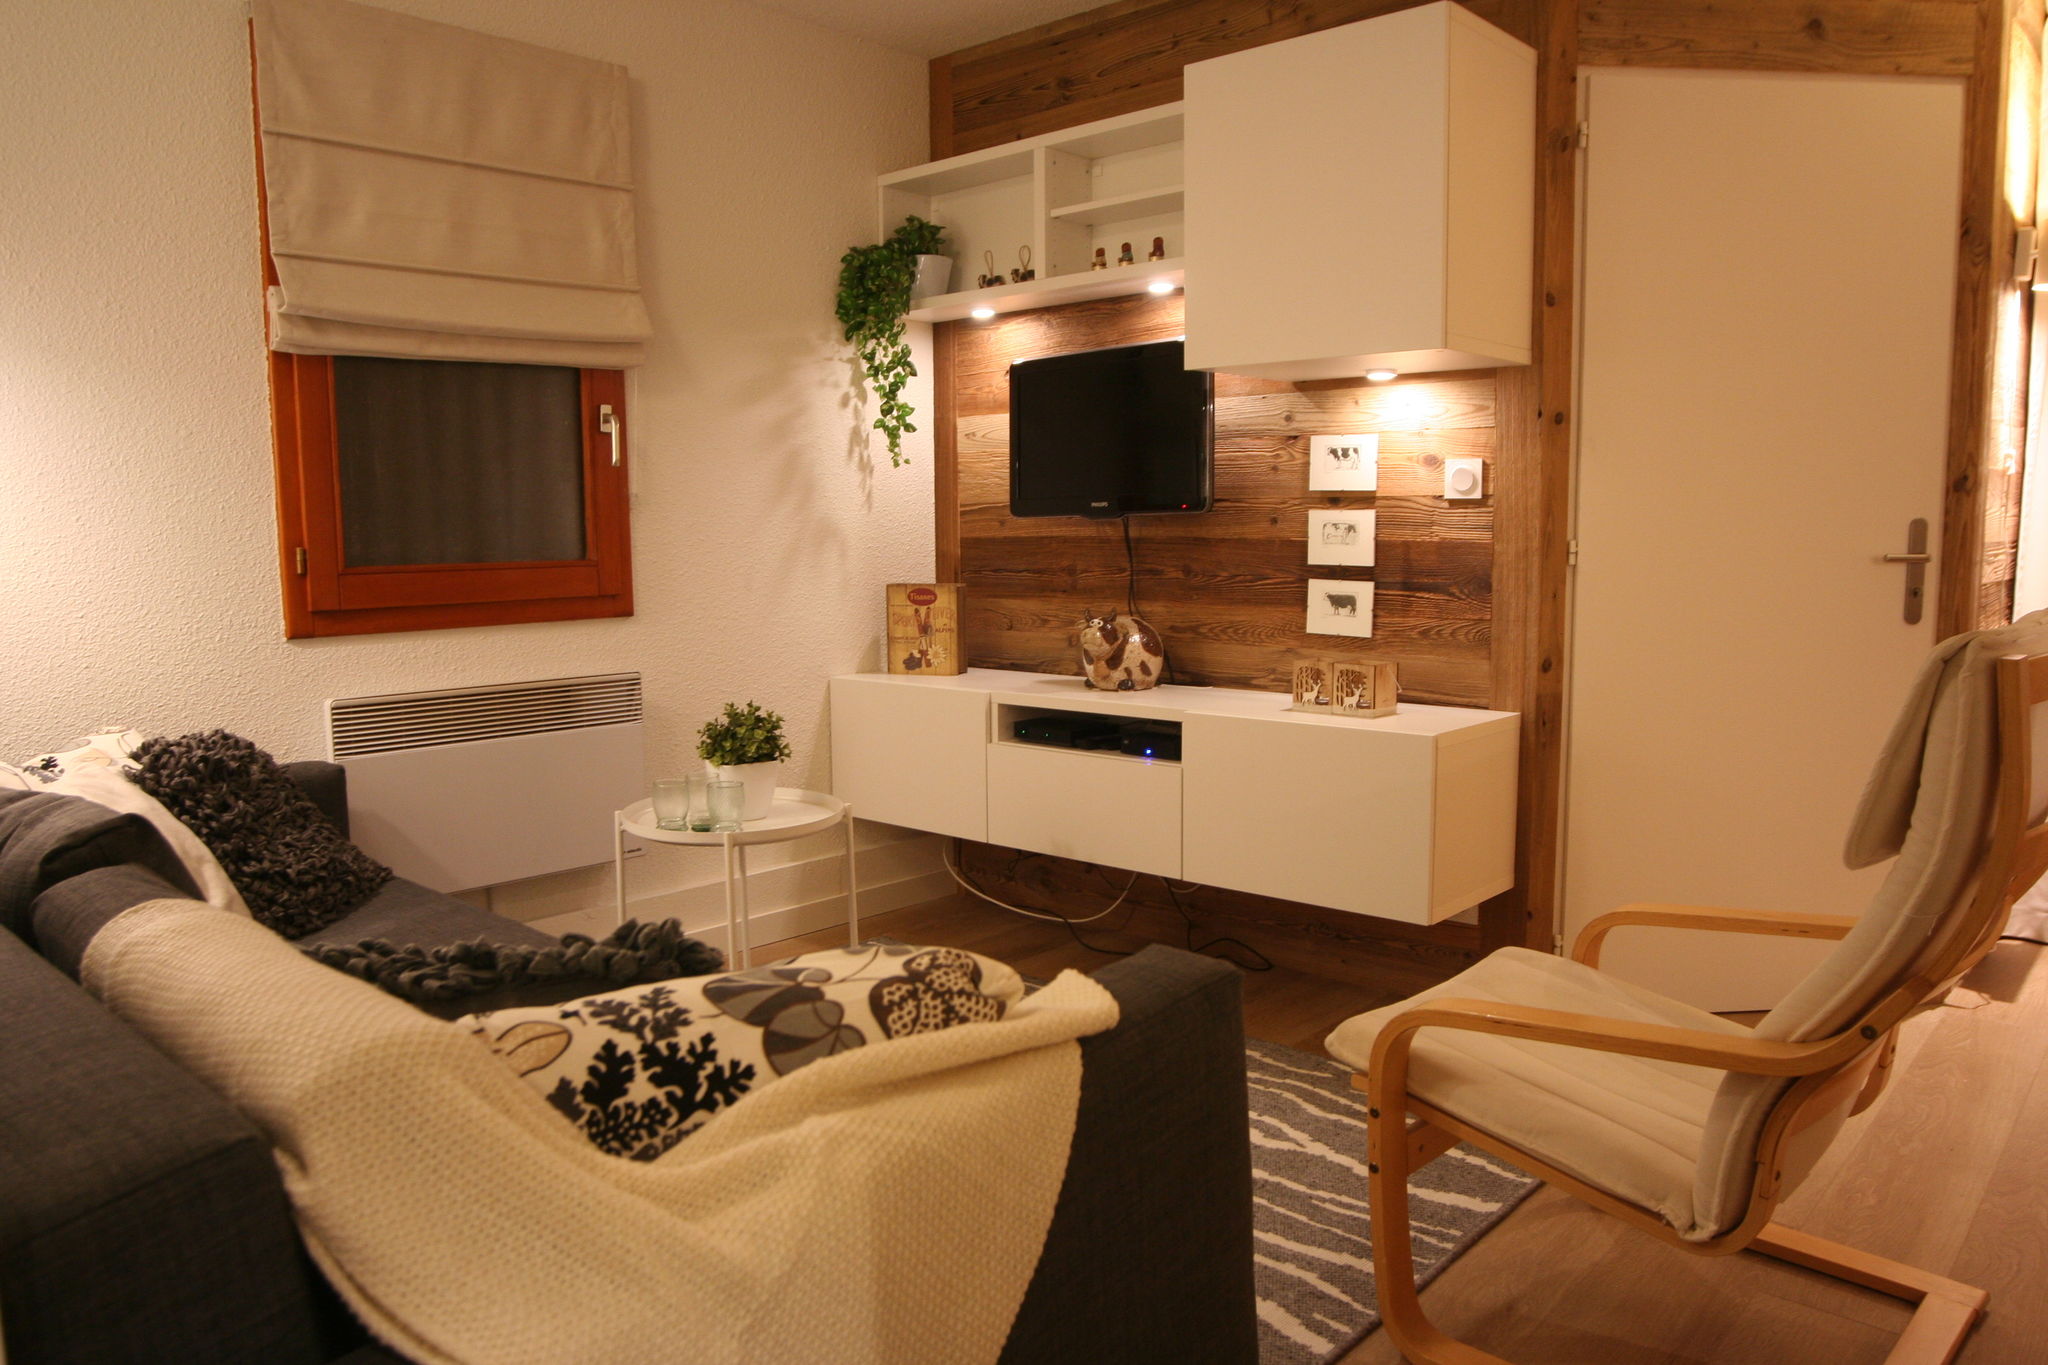 Appartement confortable aux Gets dans les Alpes françaises